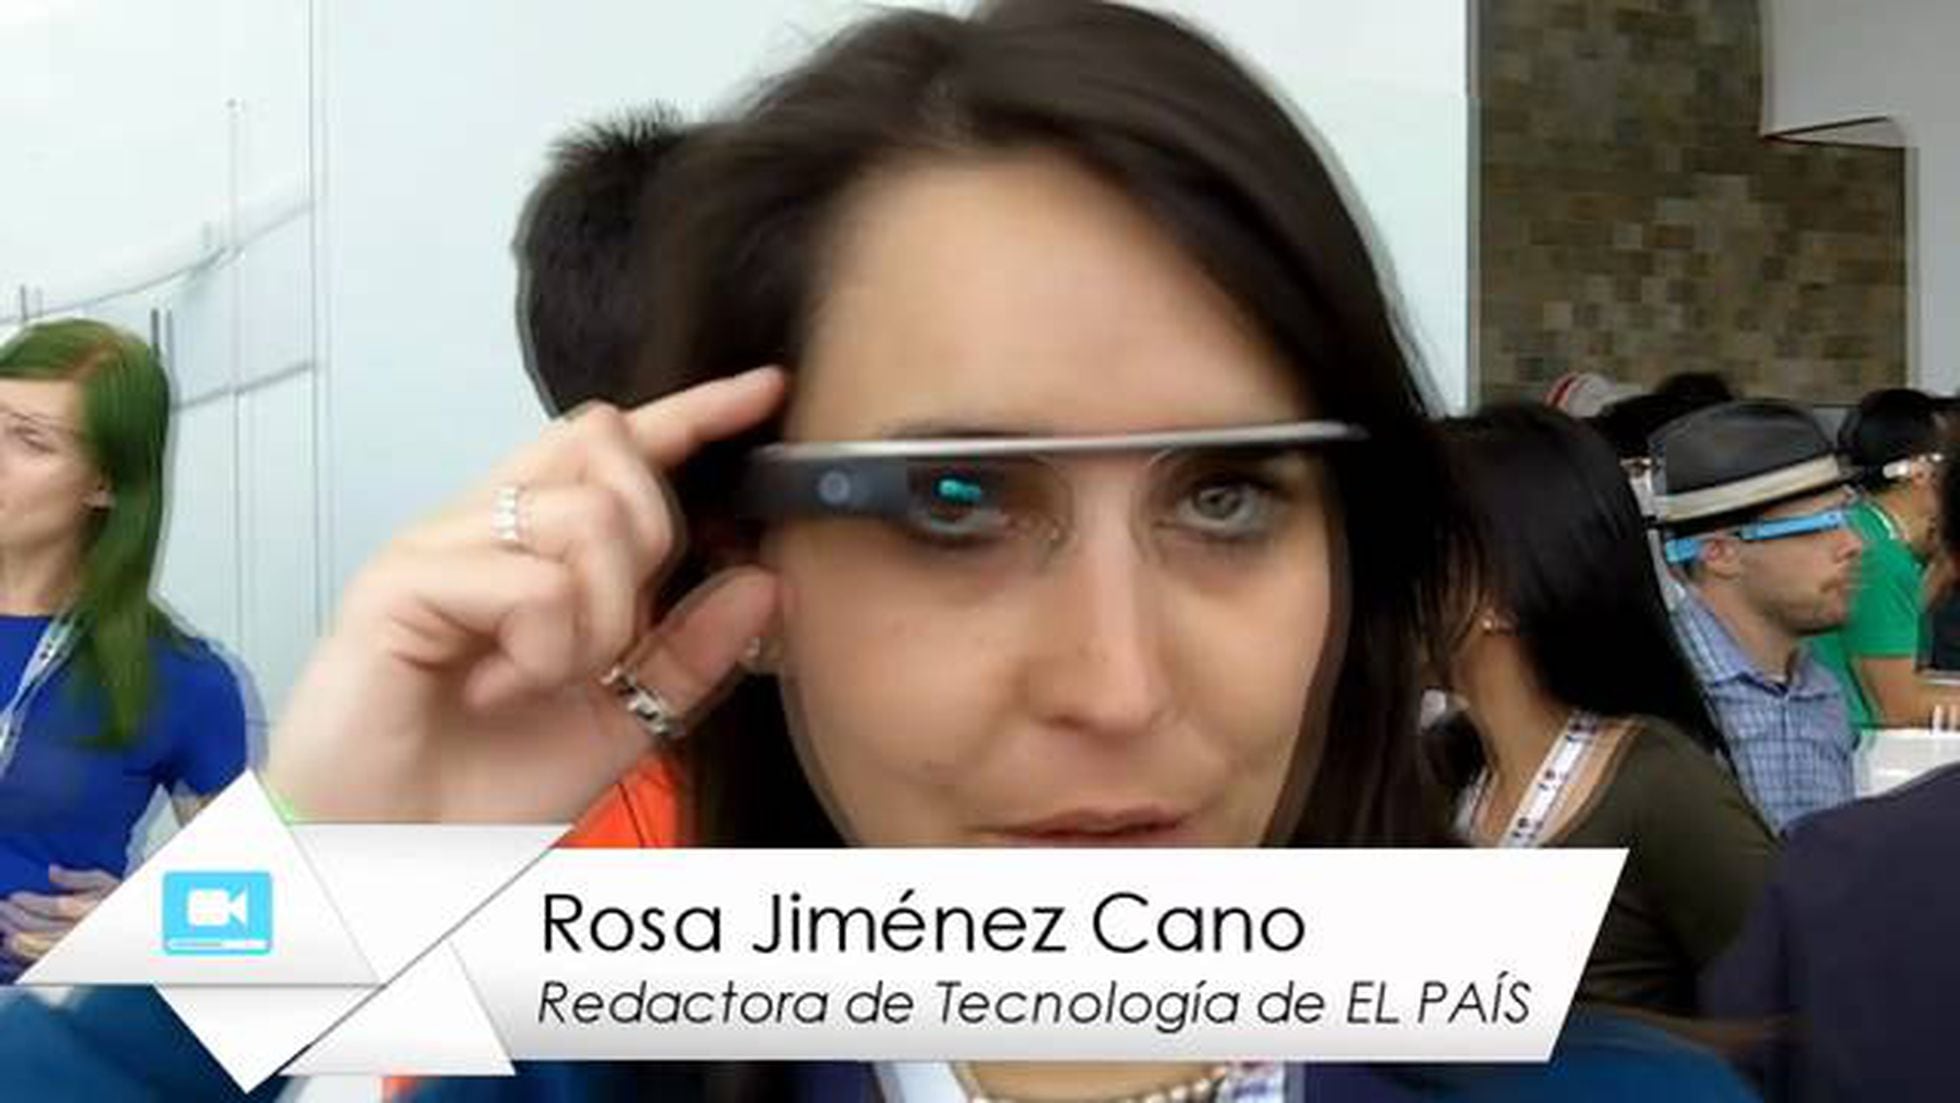 Google saca del laboratorio sus nuevas gafas de realidad aumentada